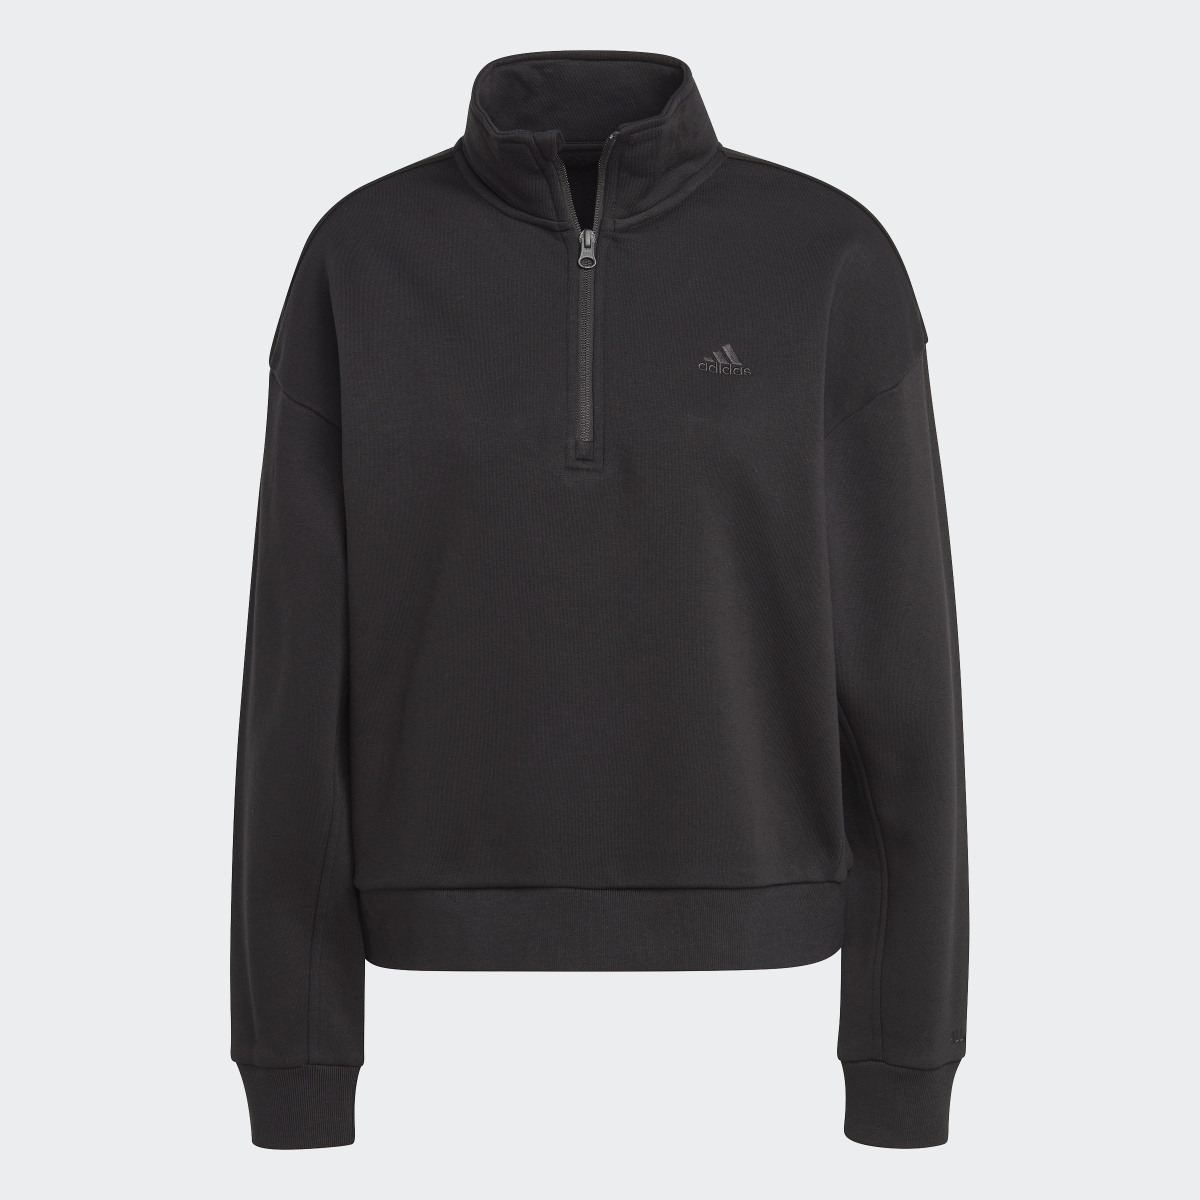 Adidas ALL SZN Fleece Graphic Quarter-Zip Sweatshirt. 5